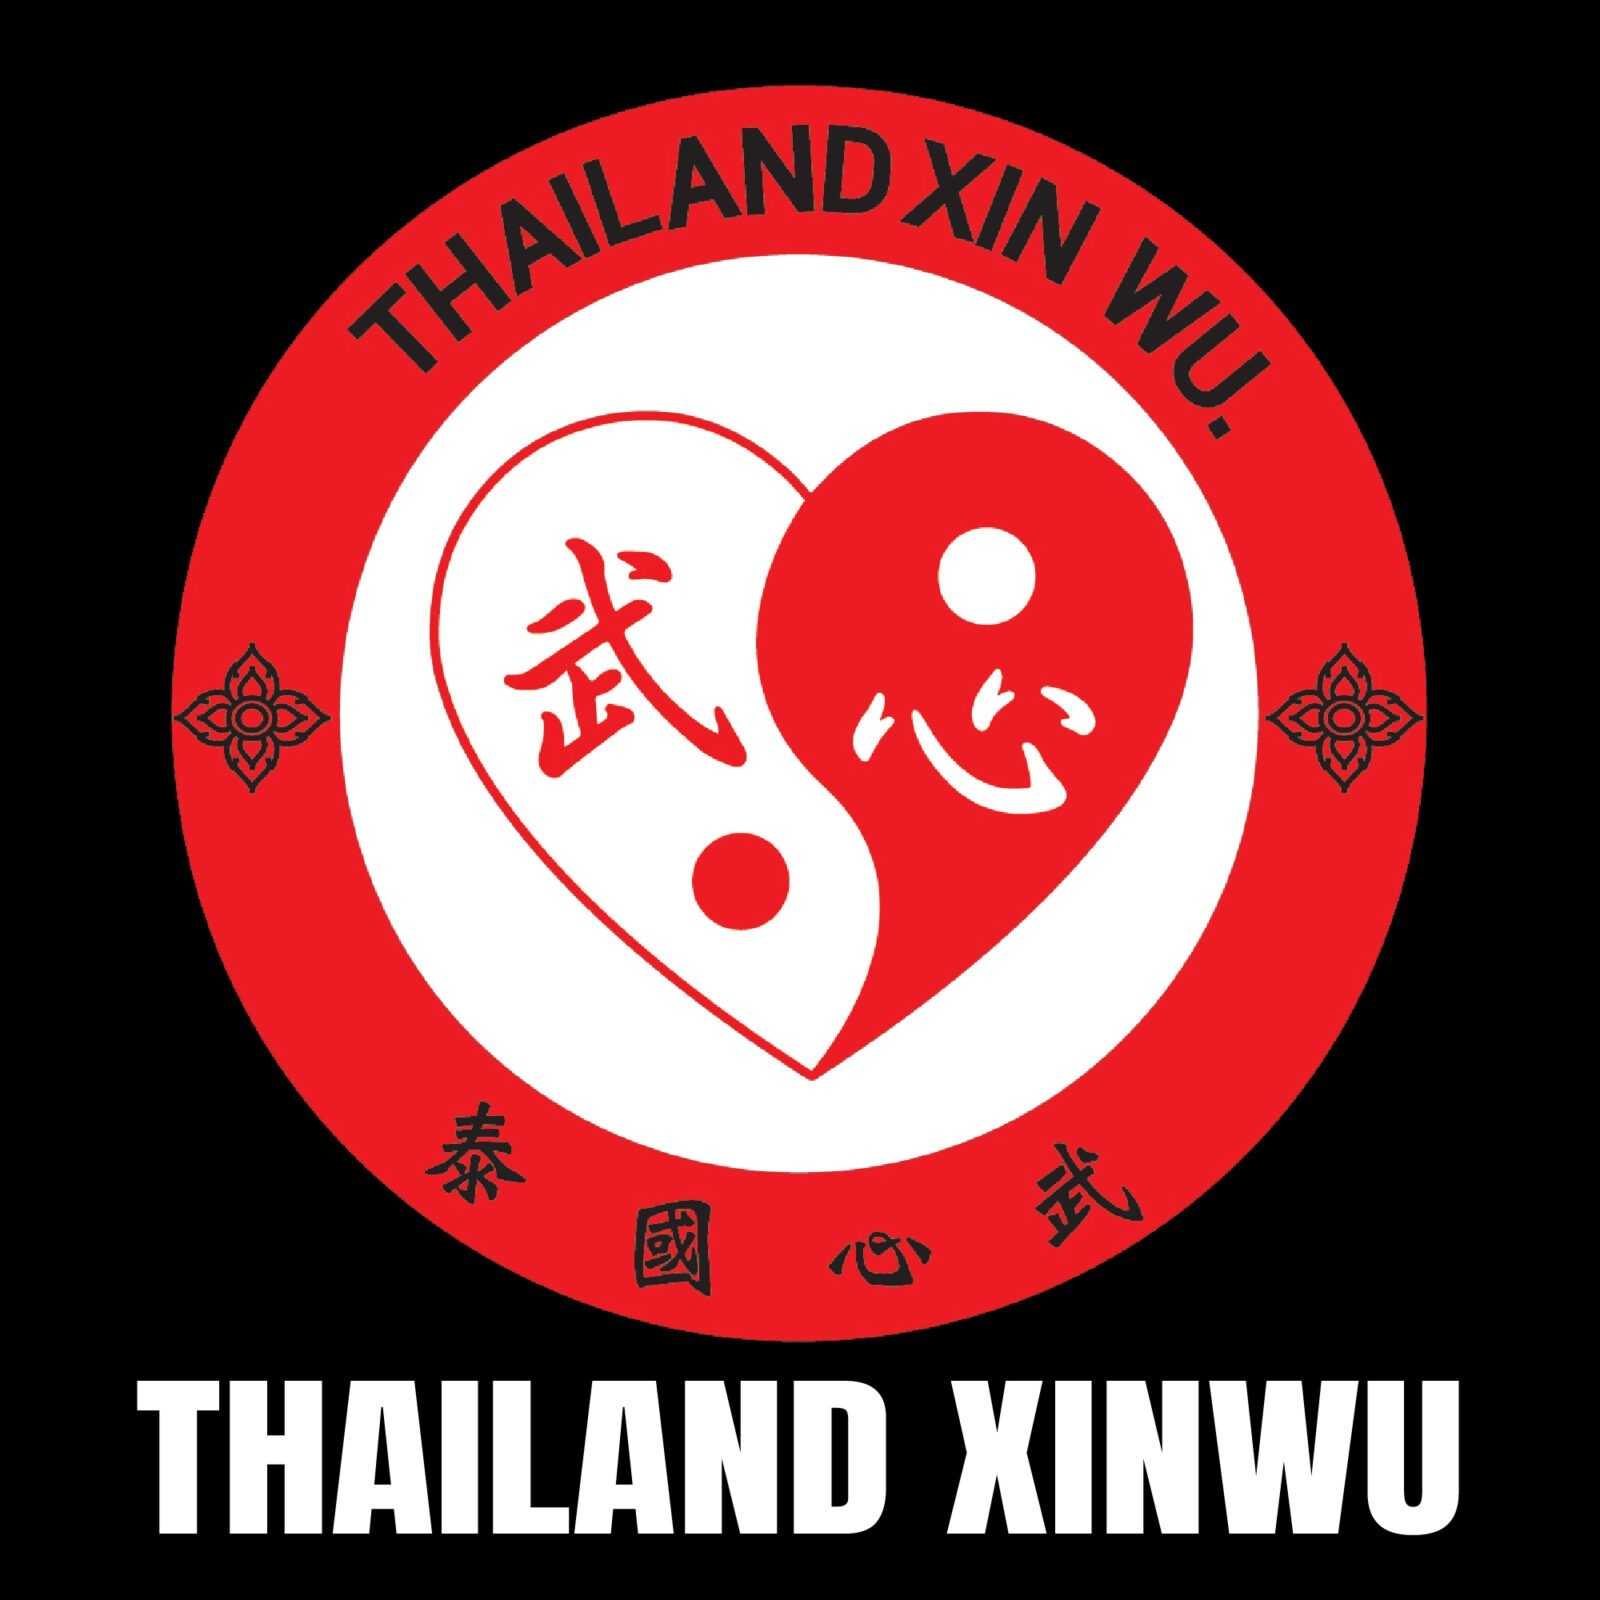 thiland xinwu@2000x 100 logo